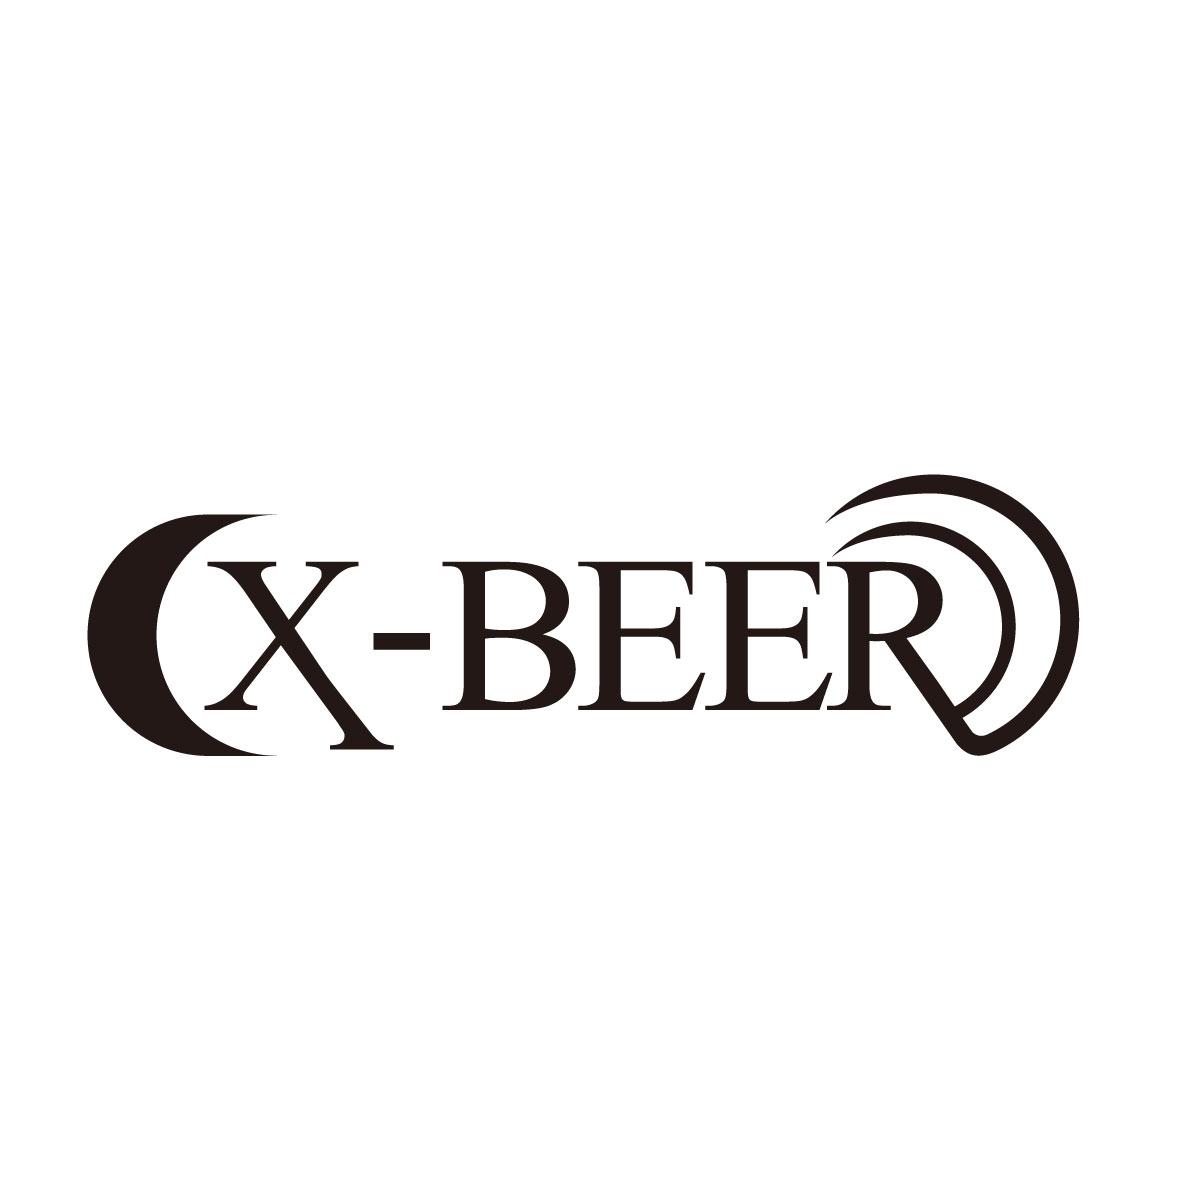 X-BEER